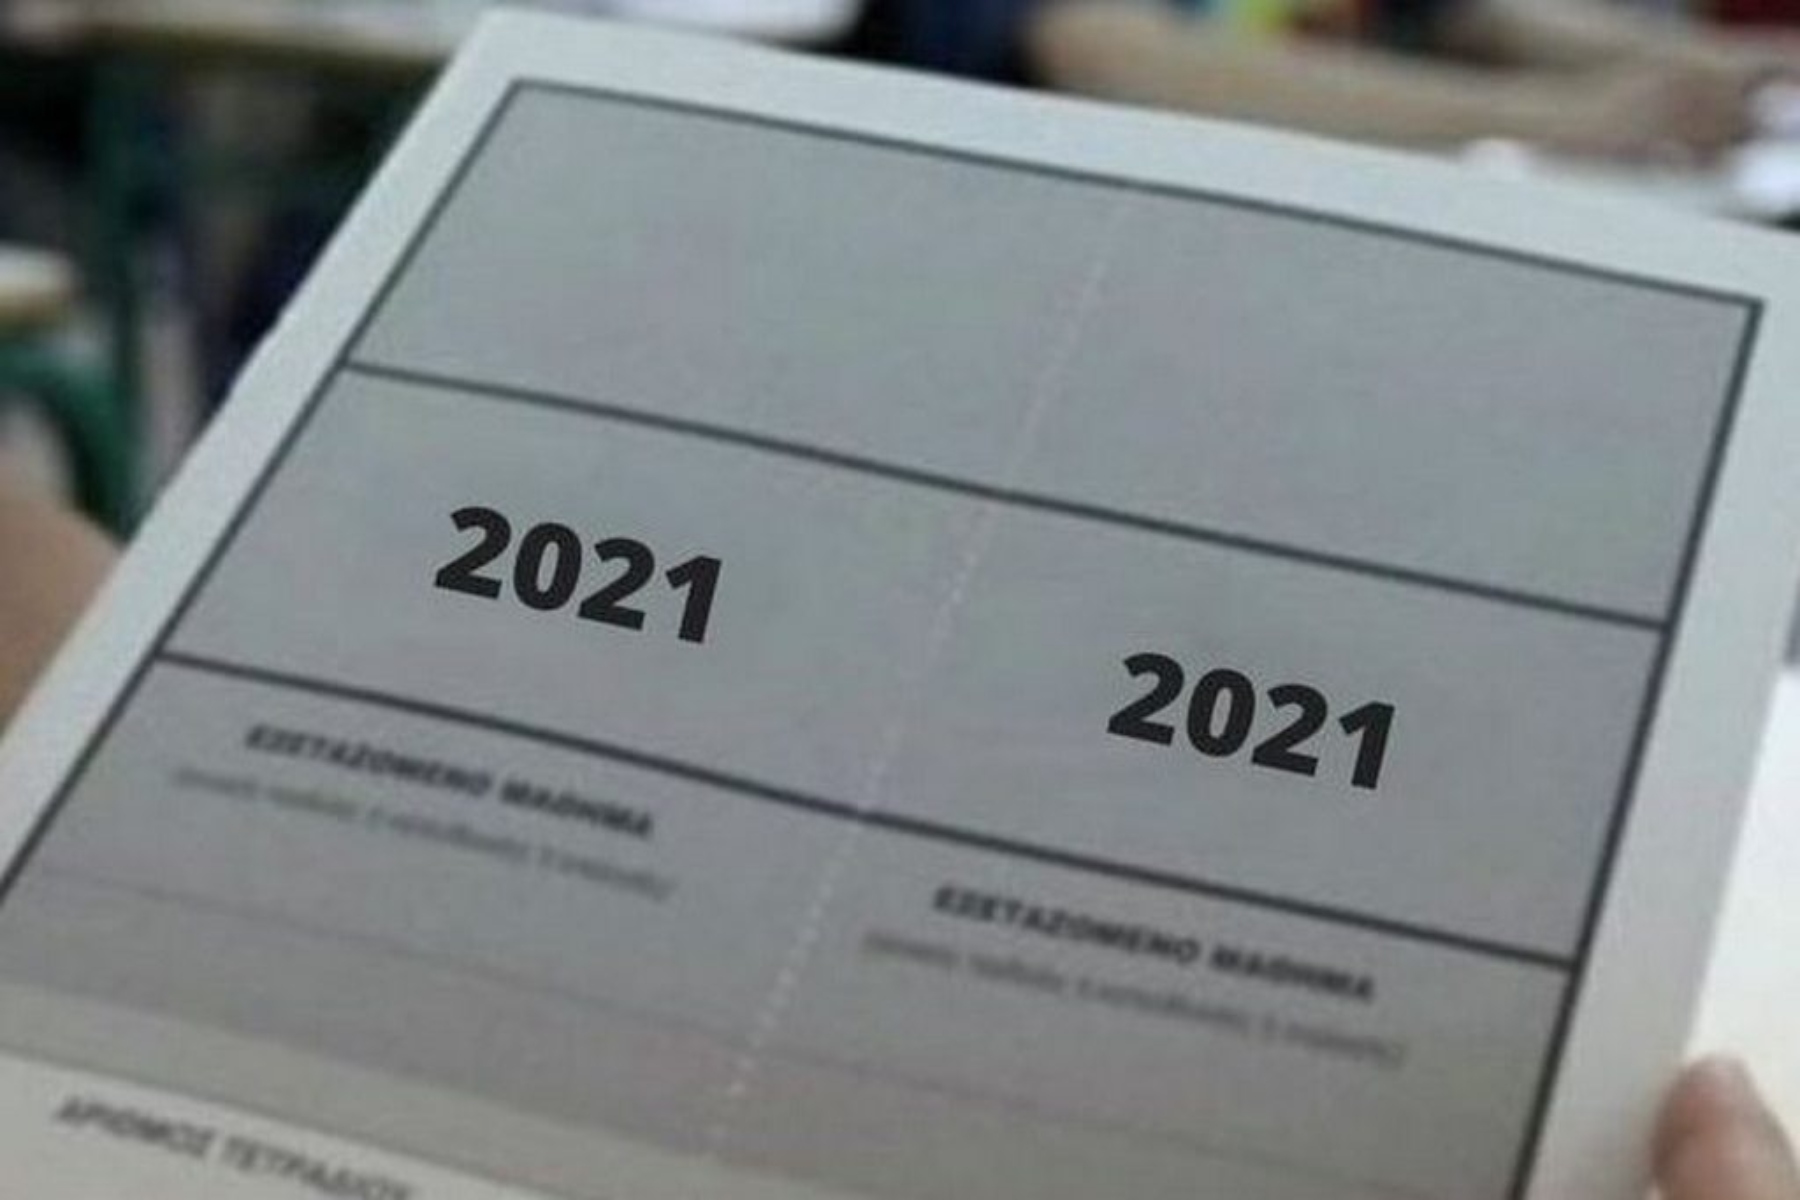 Πανελλήνιες 2021